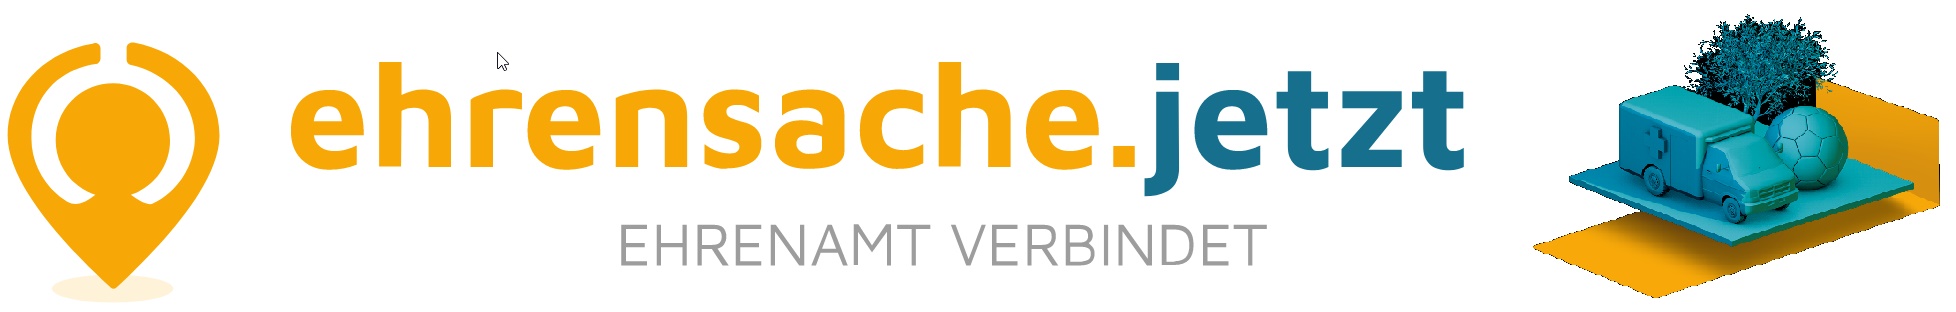 Ehrenamtsplattform www.ehrensache.jetzt bald auch im SSO-Kreis